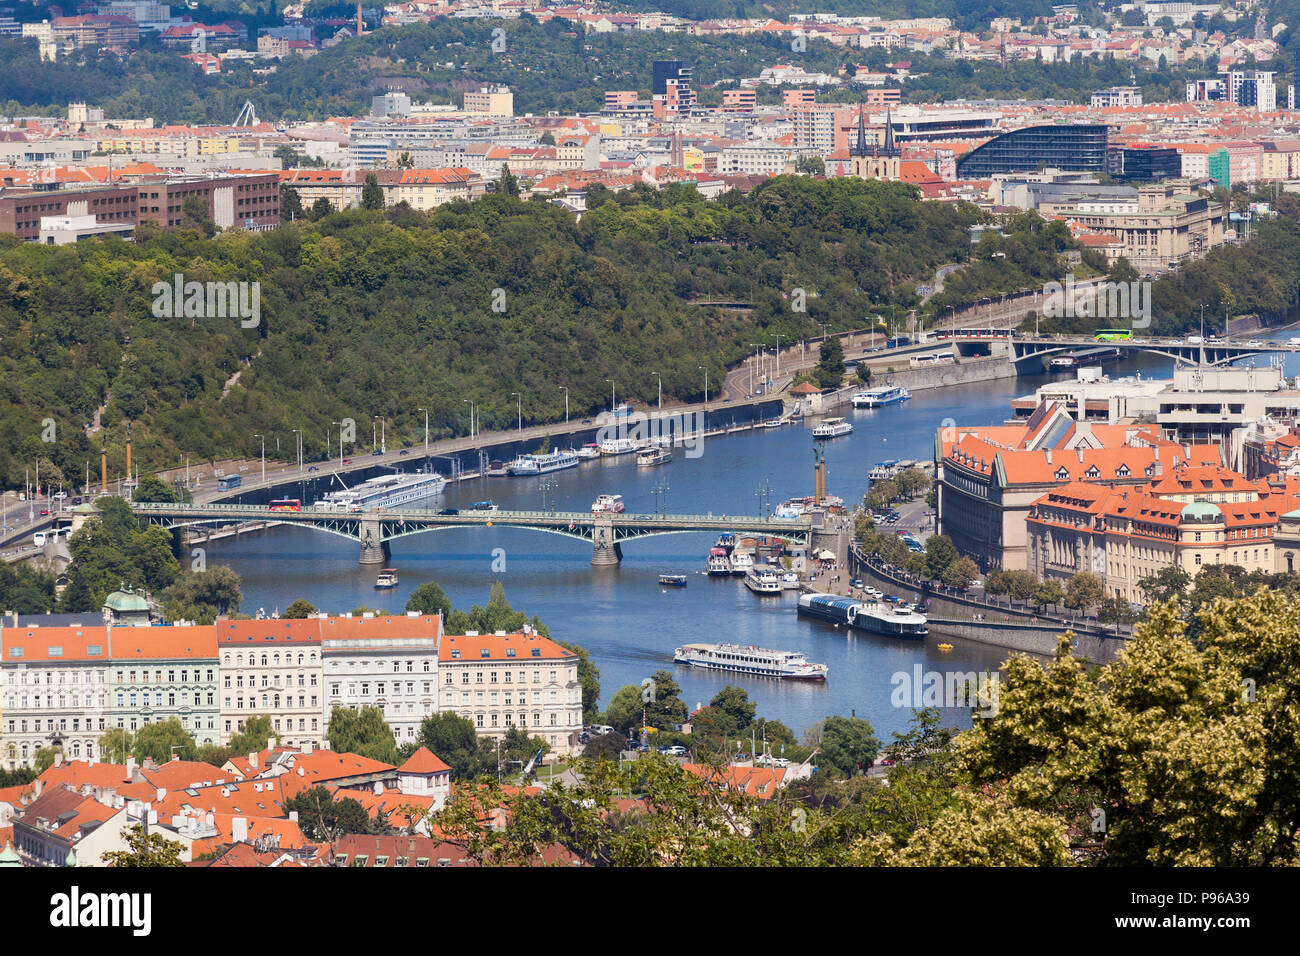 Vista panoramica di Praga da vicino il monastero di Strahov, mostrando il Cechuv Stefanikuv e ponti, sole luminoso cielo blu. Foto Stock